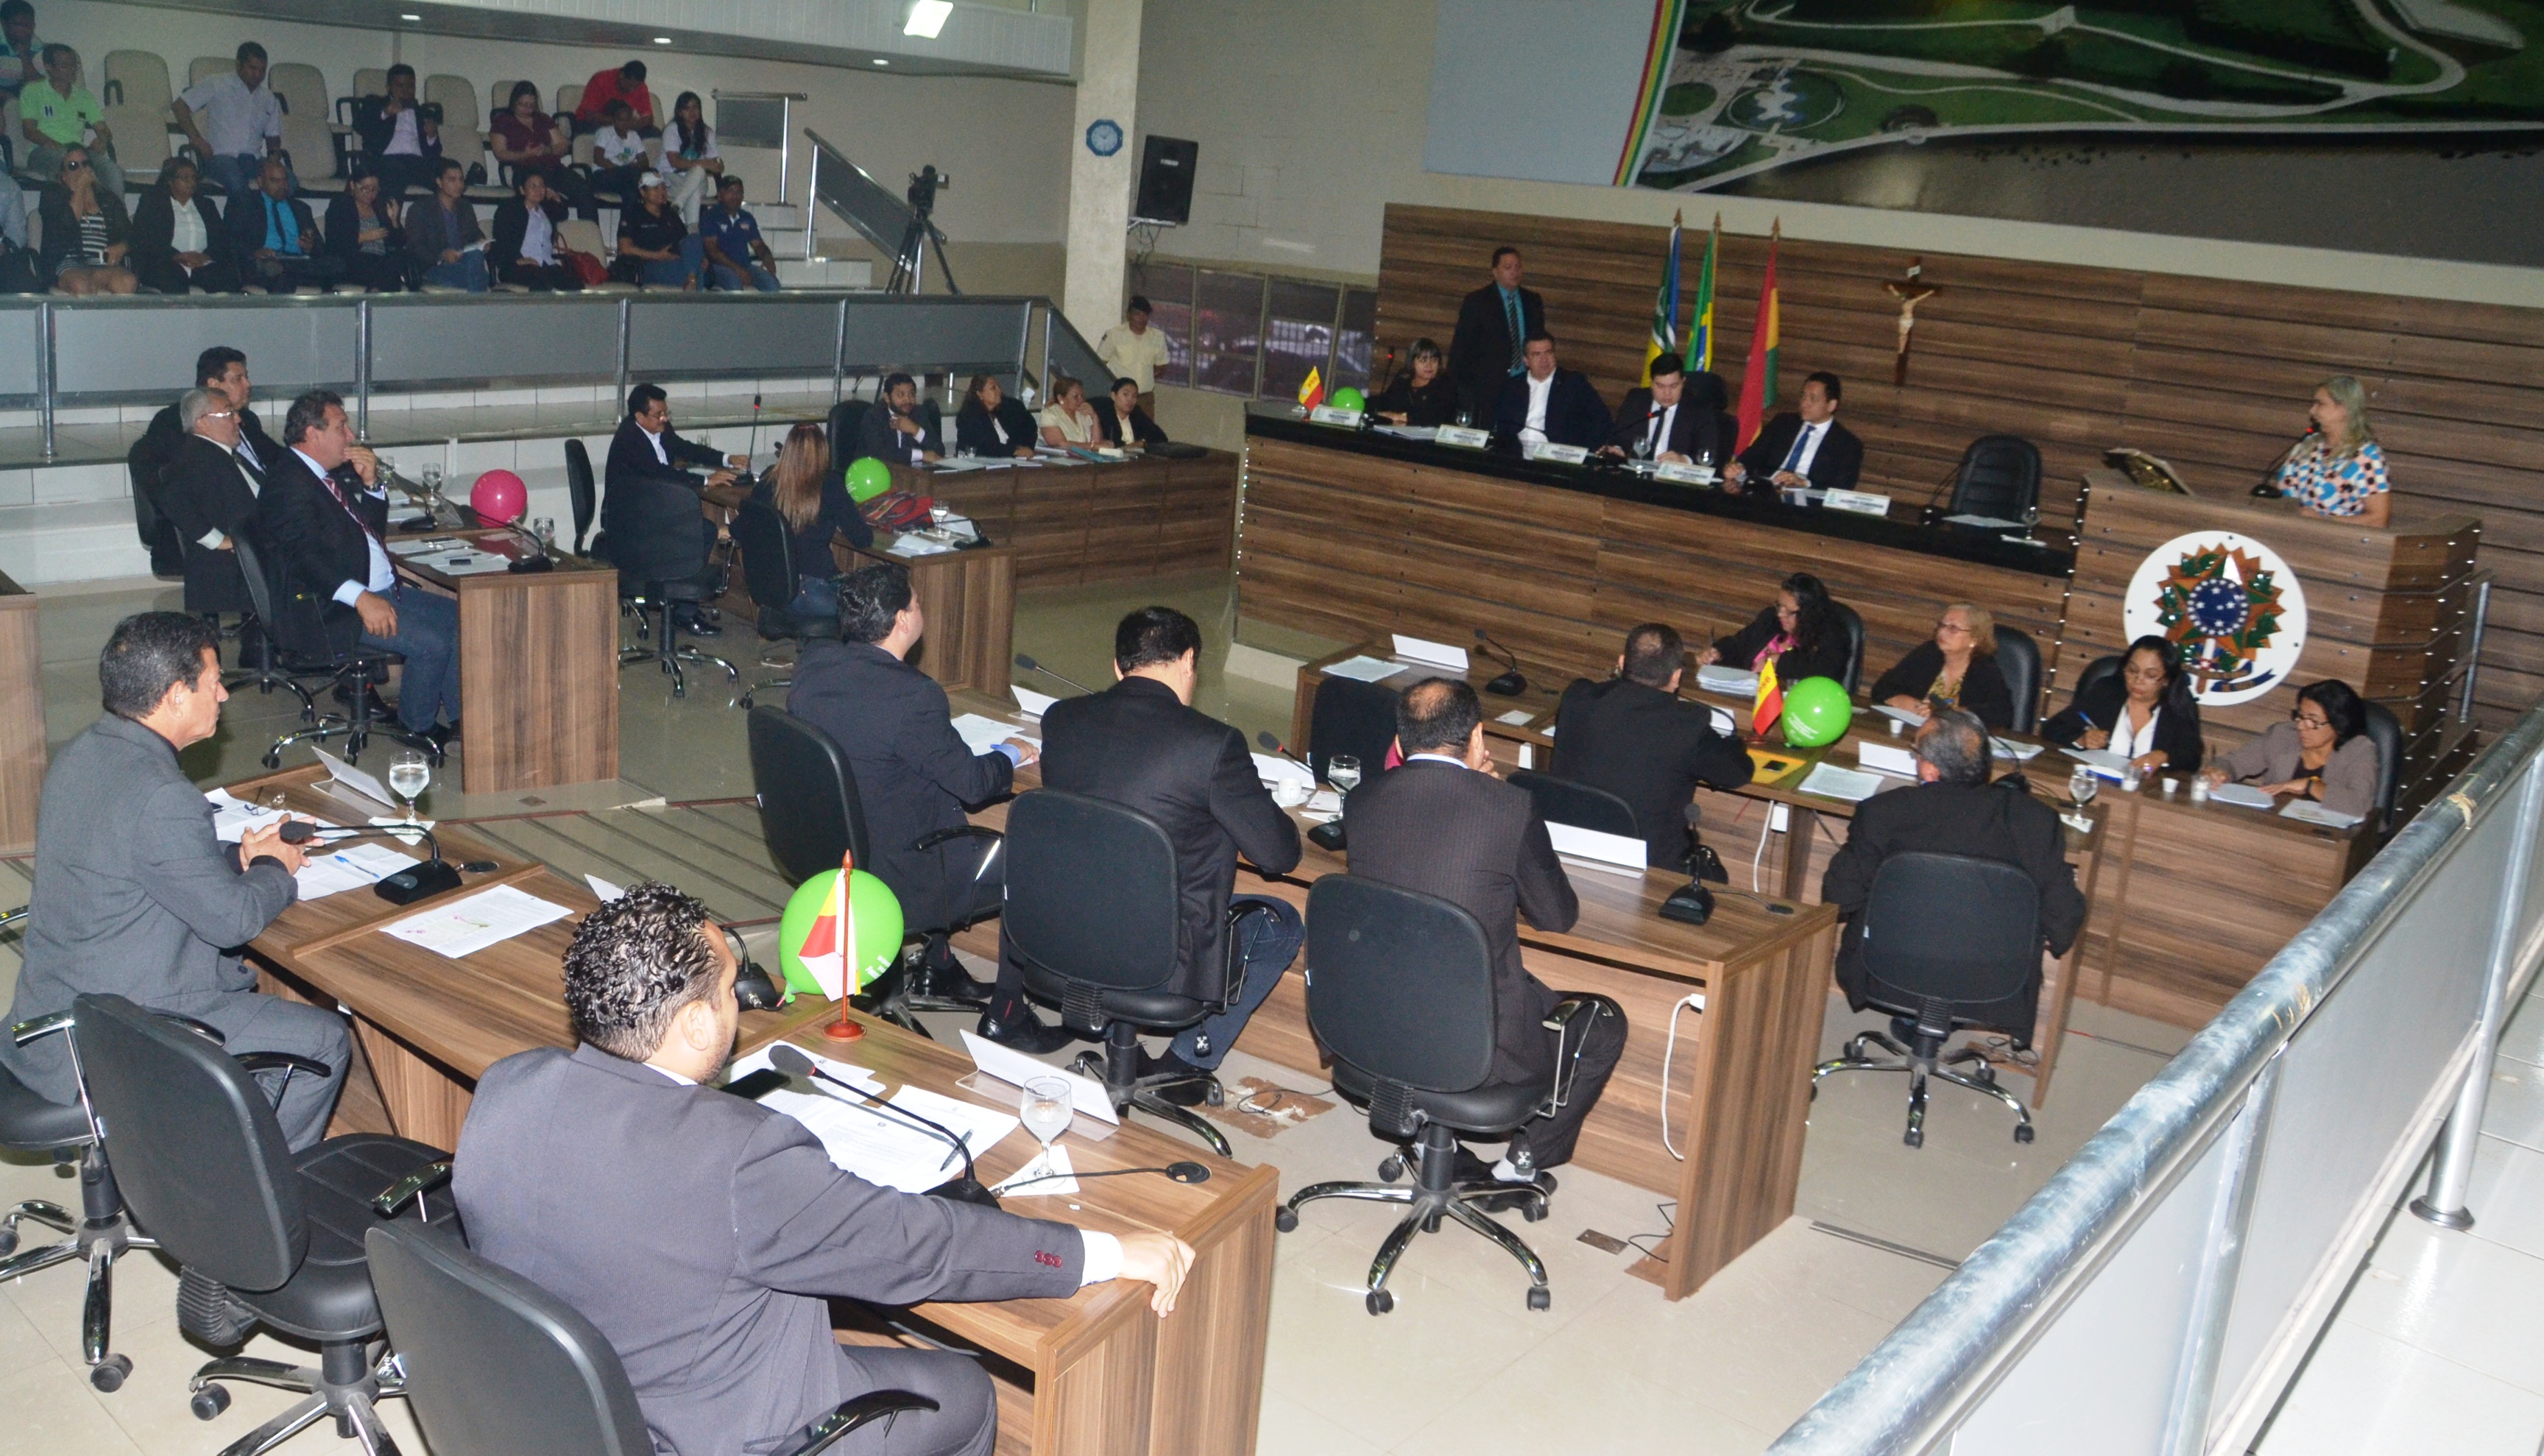 Câmara de Vereadores vai ingressar com mandado de segurança contra o reajuste da tarifa de ônibus em Macapá 